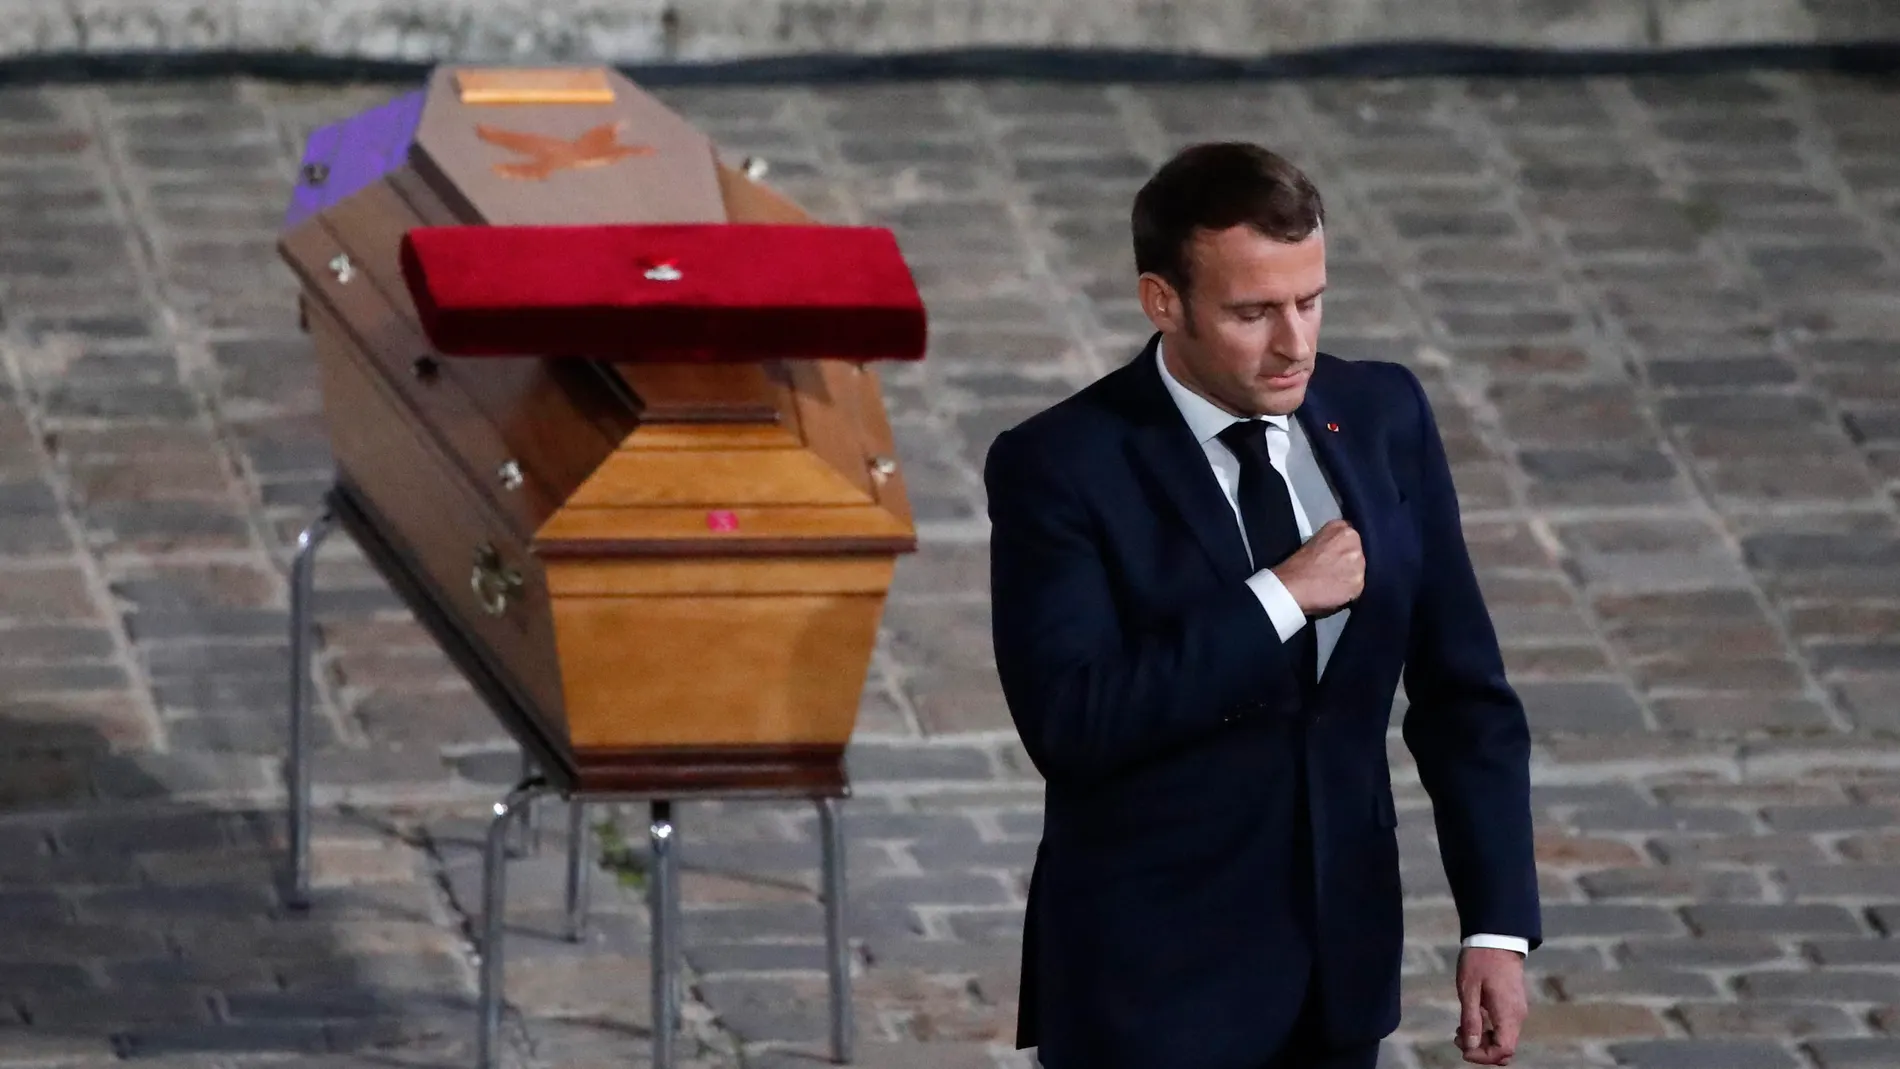 El presidente Macron, en el funeral por el profesor asesinado EFE/EPA/Francois Mori / POOL MAXPPP OUT